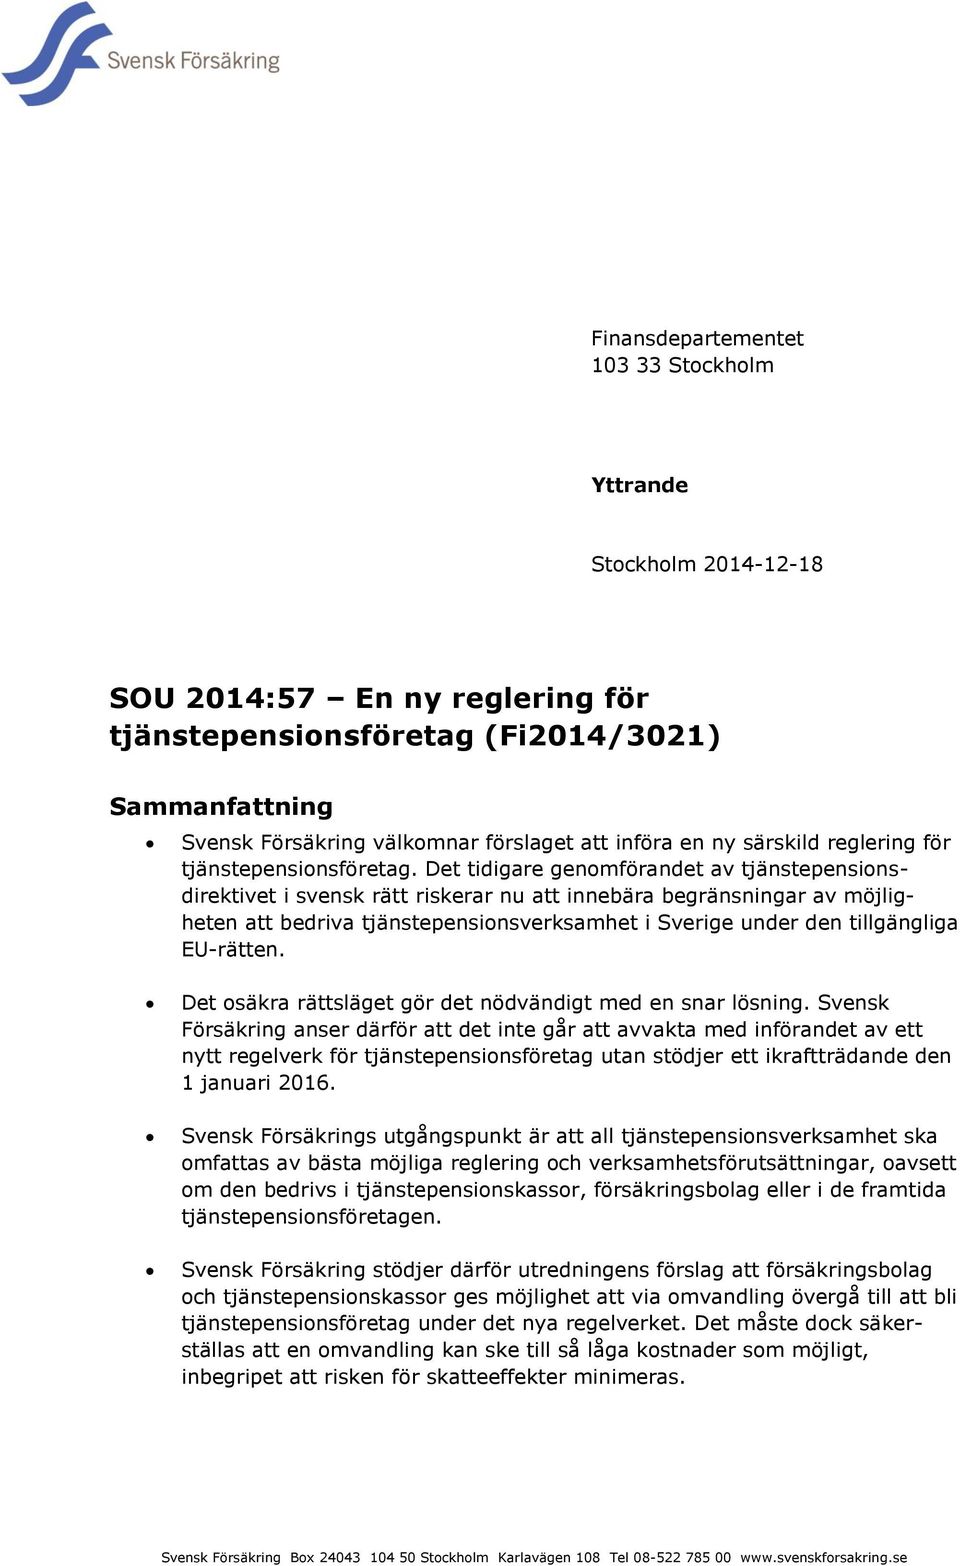 Det tidigare genomförandet av tjänstepensionsdirektivet i svensk rätt riskerar nu att innebära begränsningar av möjligheten att bedriva tjänstepensionsverksamhet i Sverige under den tillgängliga